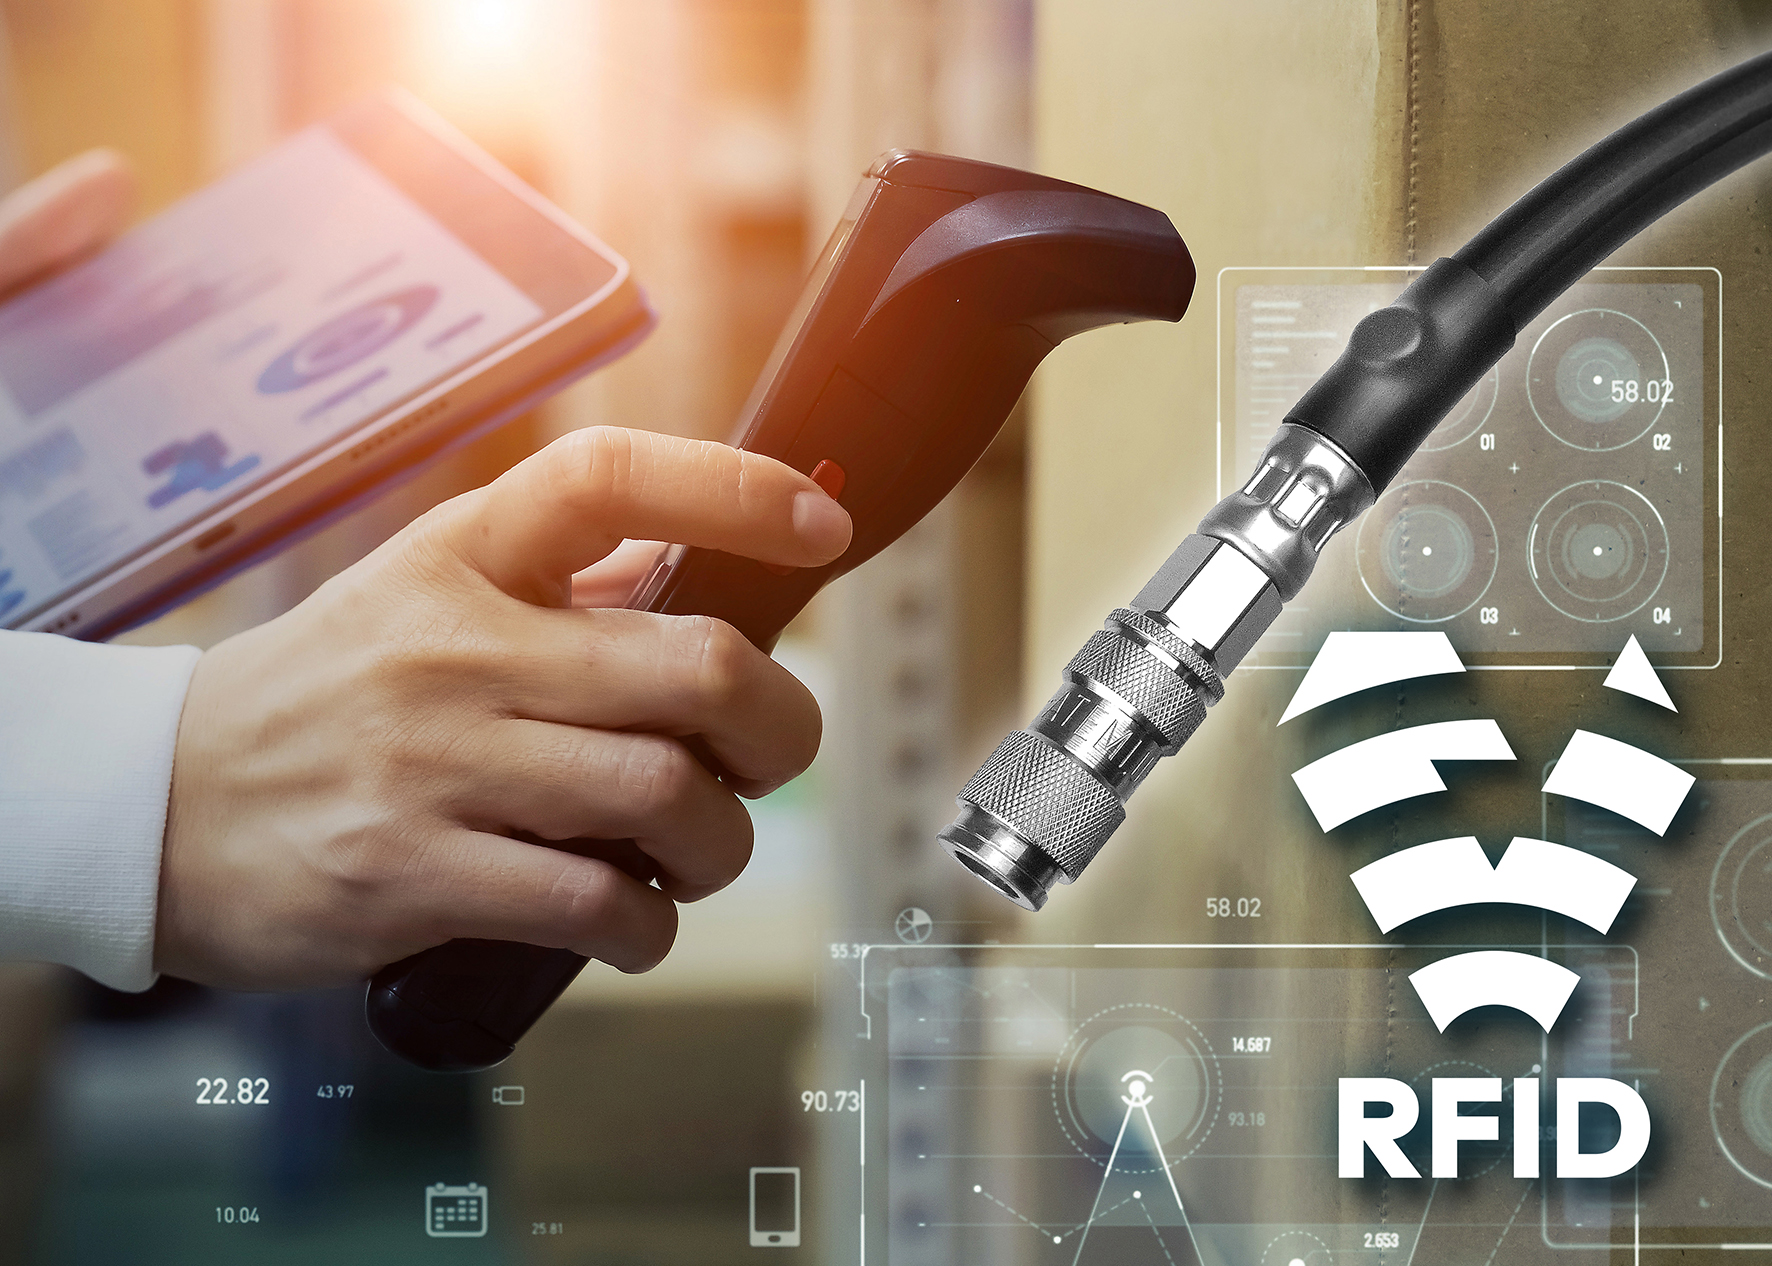 Anwendungsbild: RFID-Chip an einem Druckluft-Zuführungsschlauch wird abgescannt